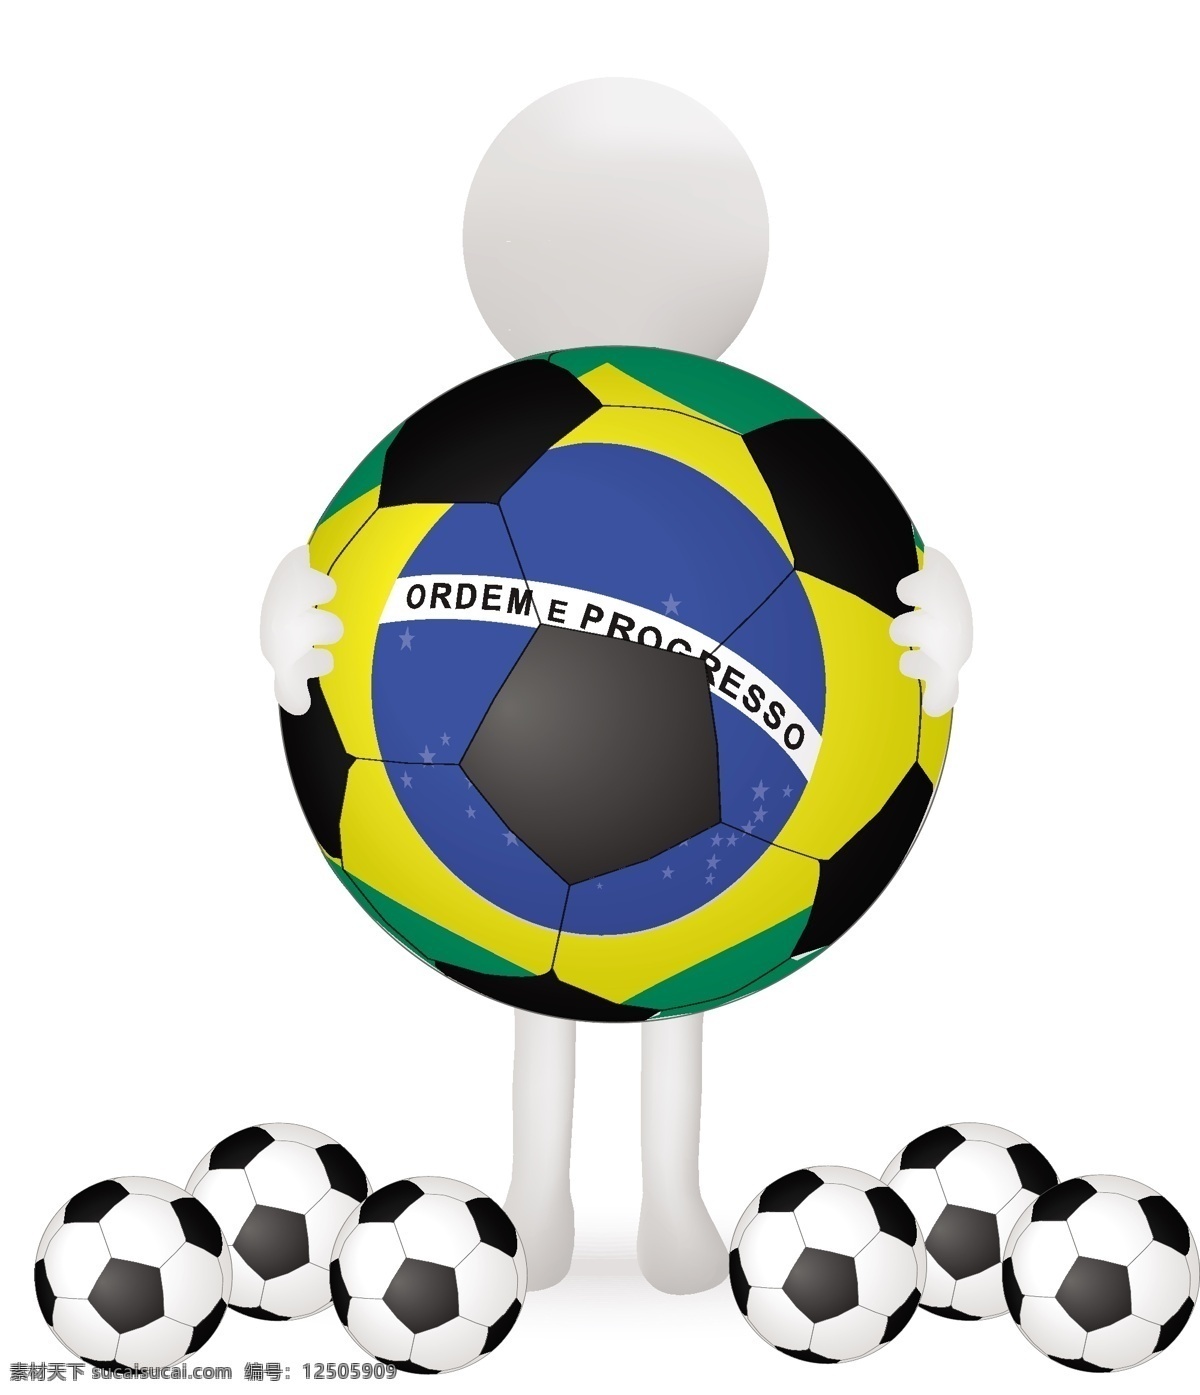 2014 世界杯 巴西世界杯 矢量 欧洲杯 体育 体育运动 宣传设计 足球 模板下载 足球世界杯 足球比赛 足球设计 体育设计 足球运动 体育比赛 足球广告 矢量图 日常生活